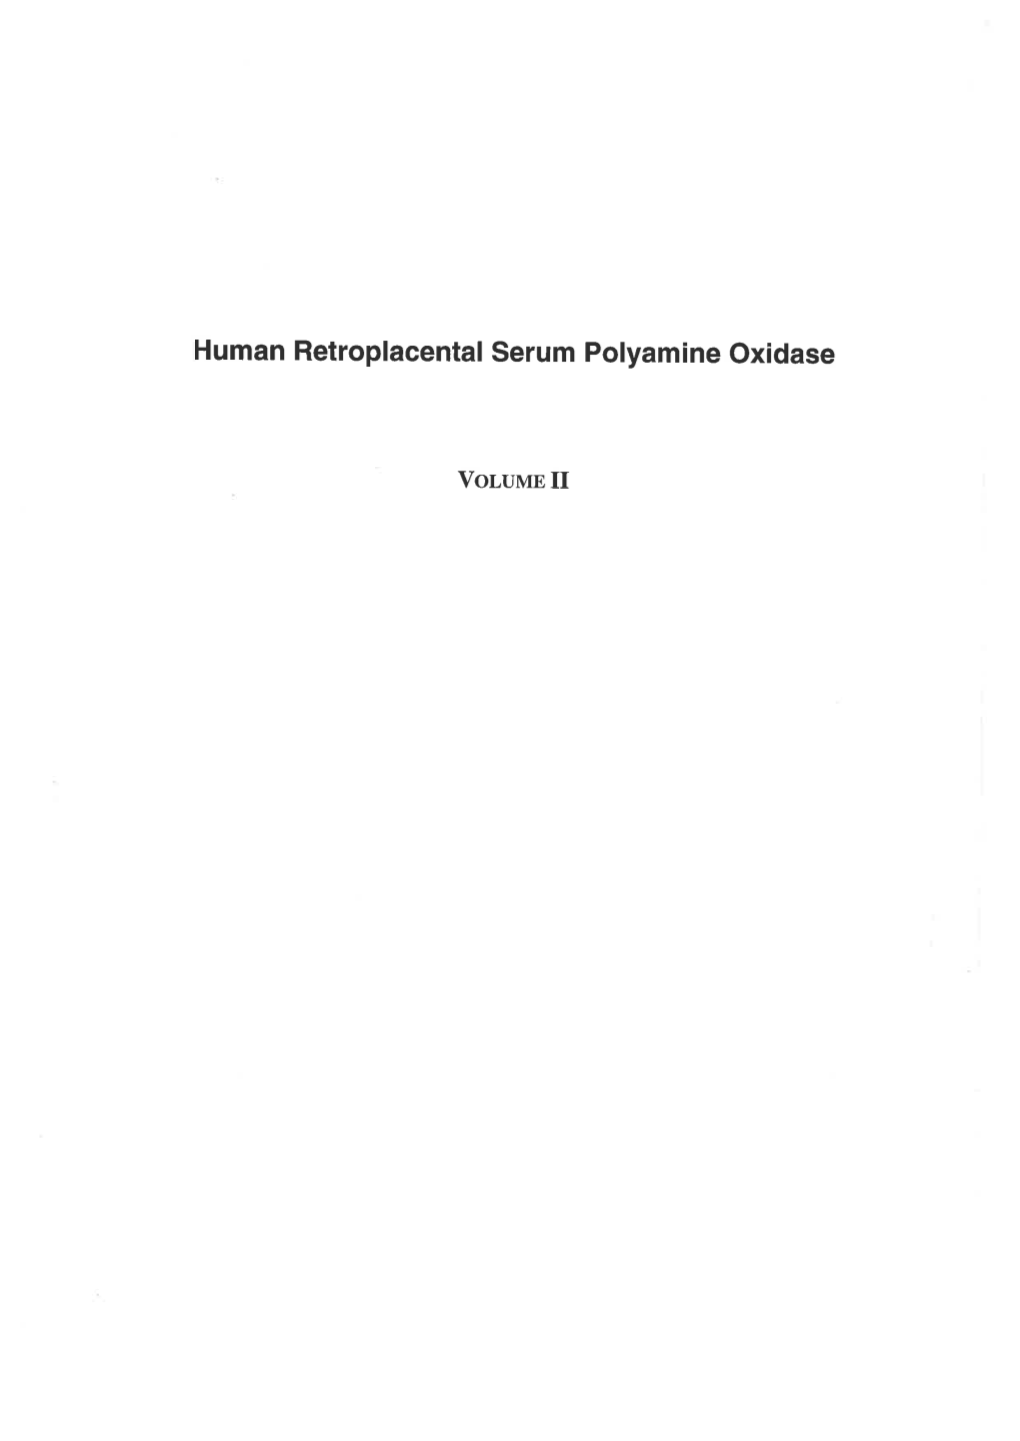 Human Retroplacental Serum Polyamine Oxidase